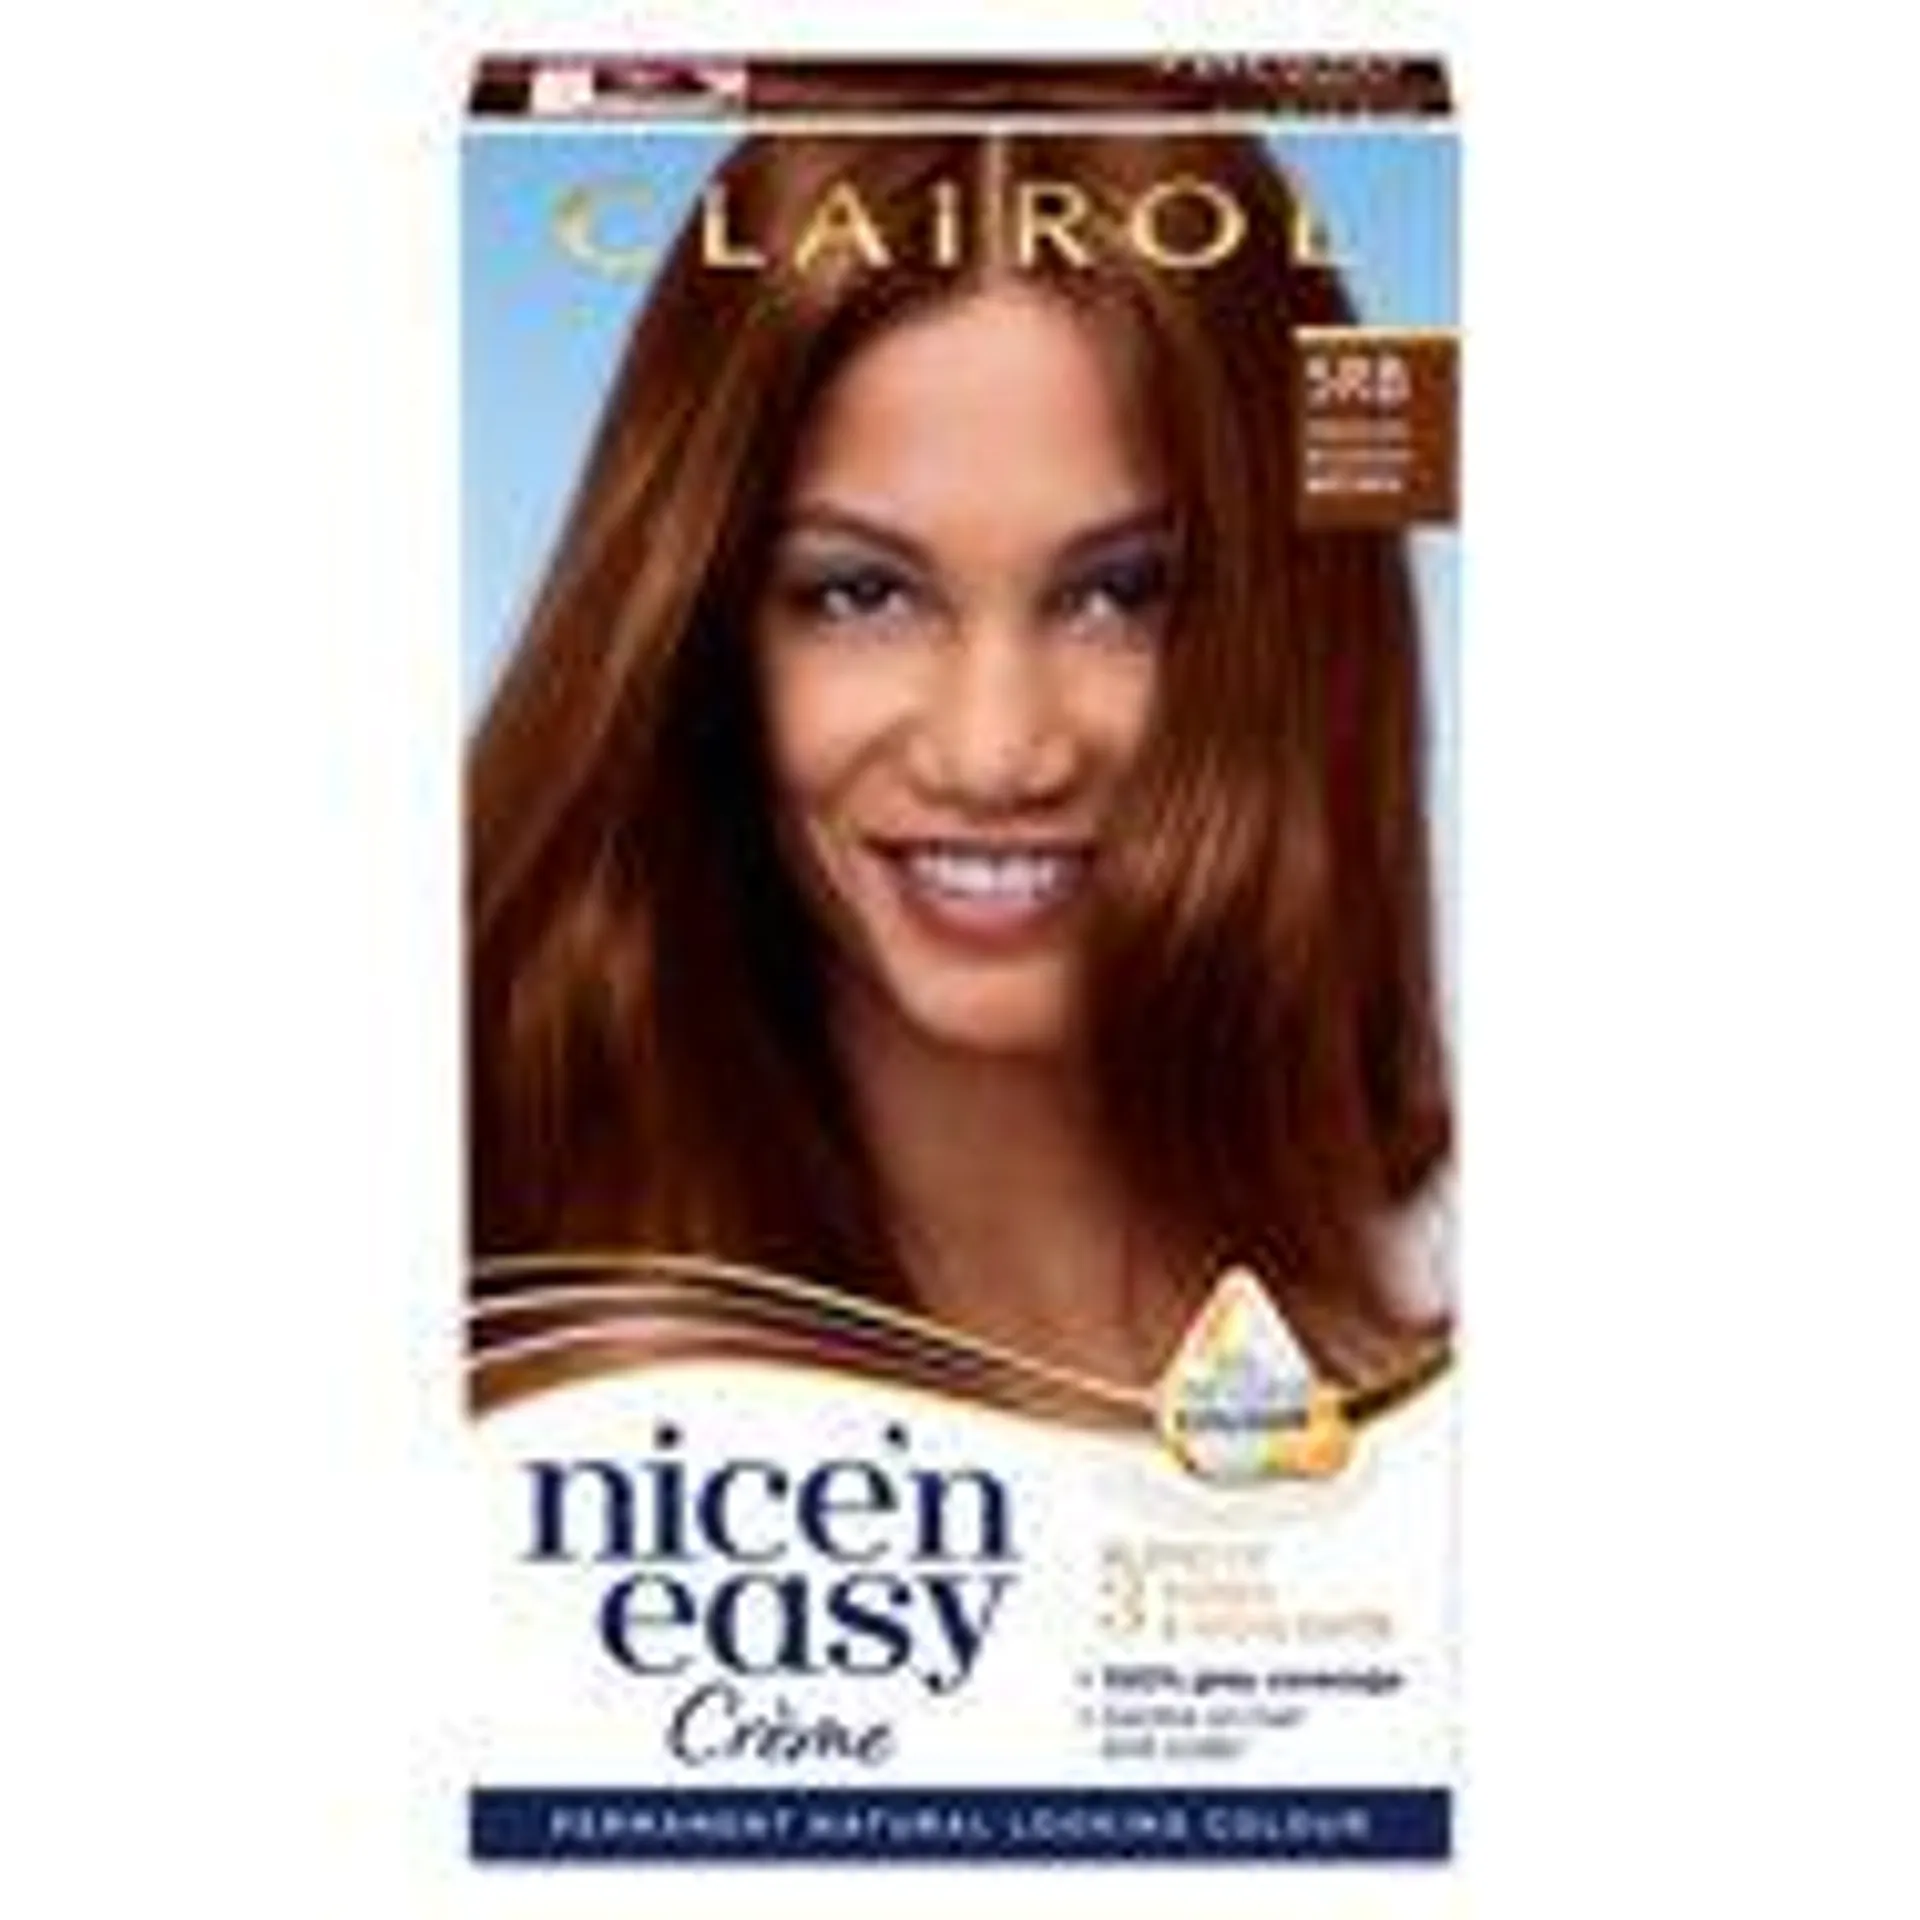 Clairol Nice'n Easy Permanent Hair Dye 5RB Medium Reddish Brown